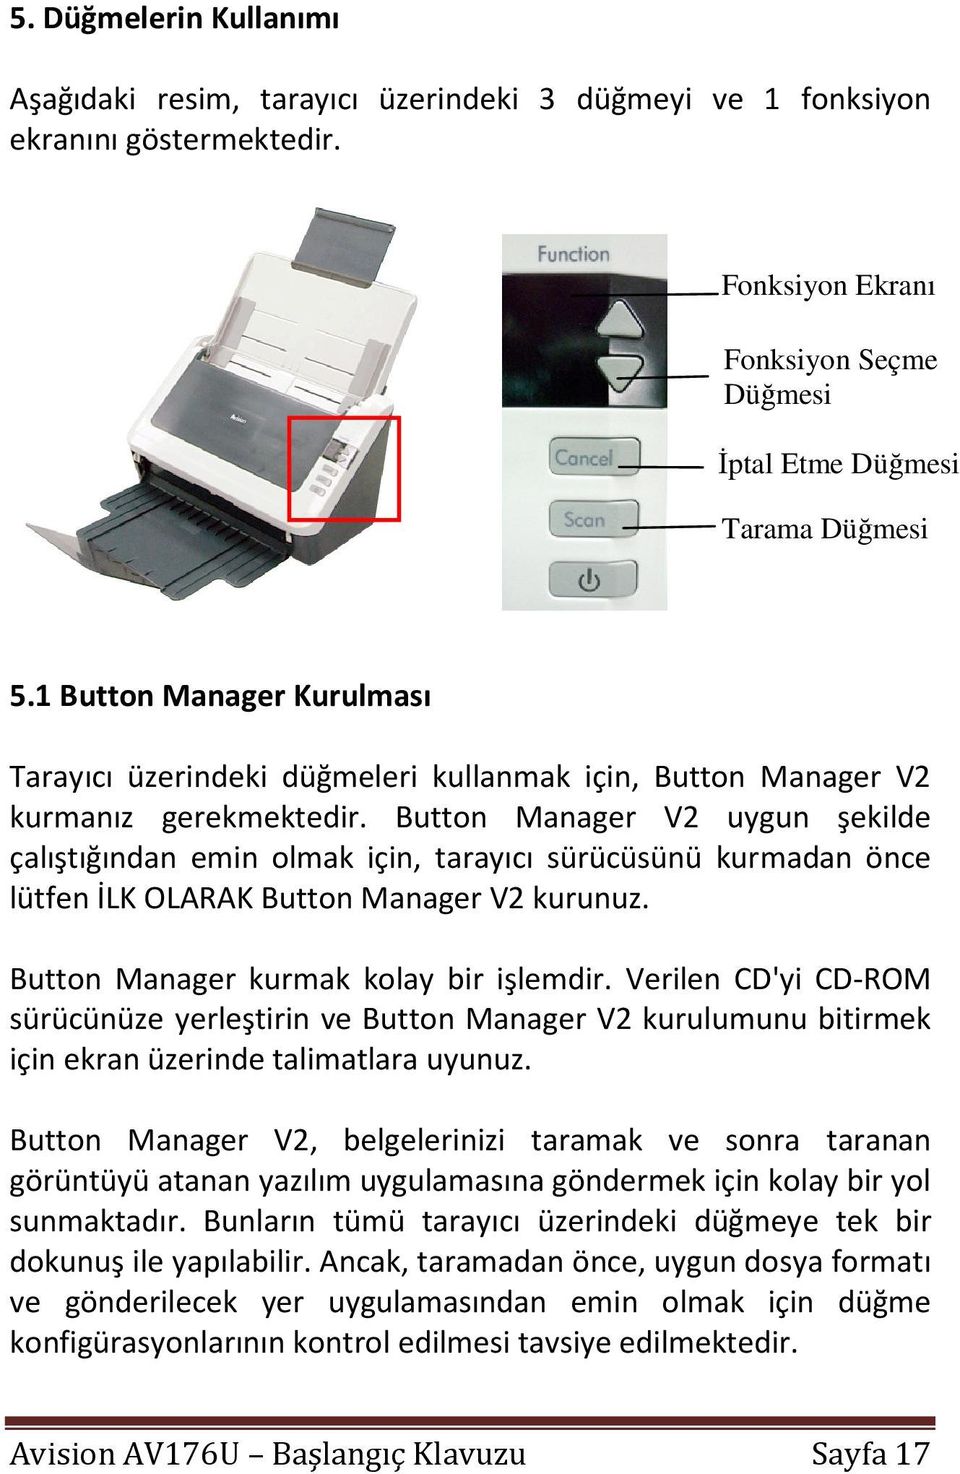 Button Manager V2 uygun şekilde çalıştığından emin olmak için, tarayıcı sürücüsünü kurmadan önce lütfen İLK OLARAK Button Manager V2 kurunuz. Button Manager kurmak kolay bir işlemdir.